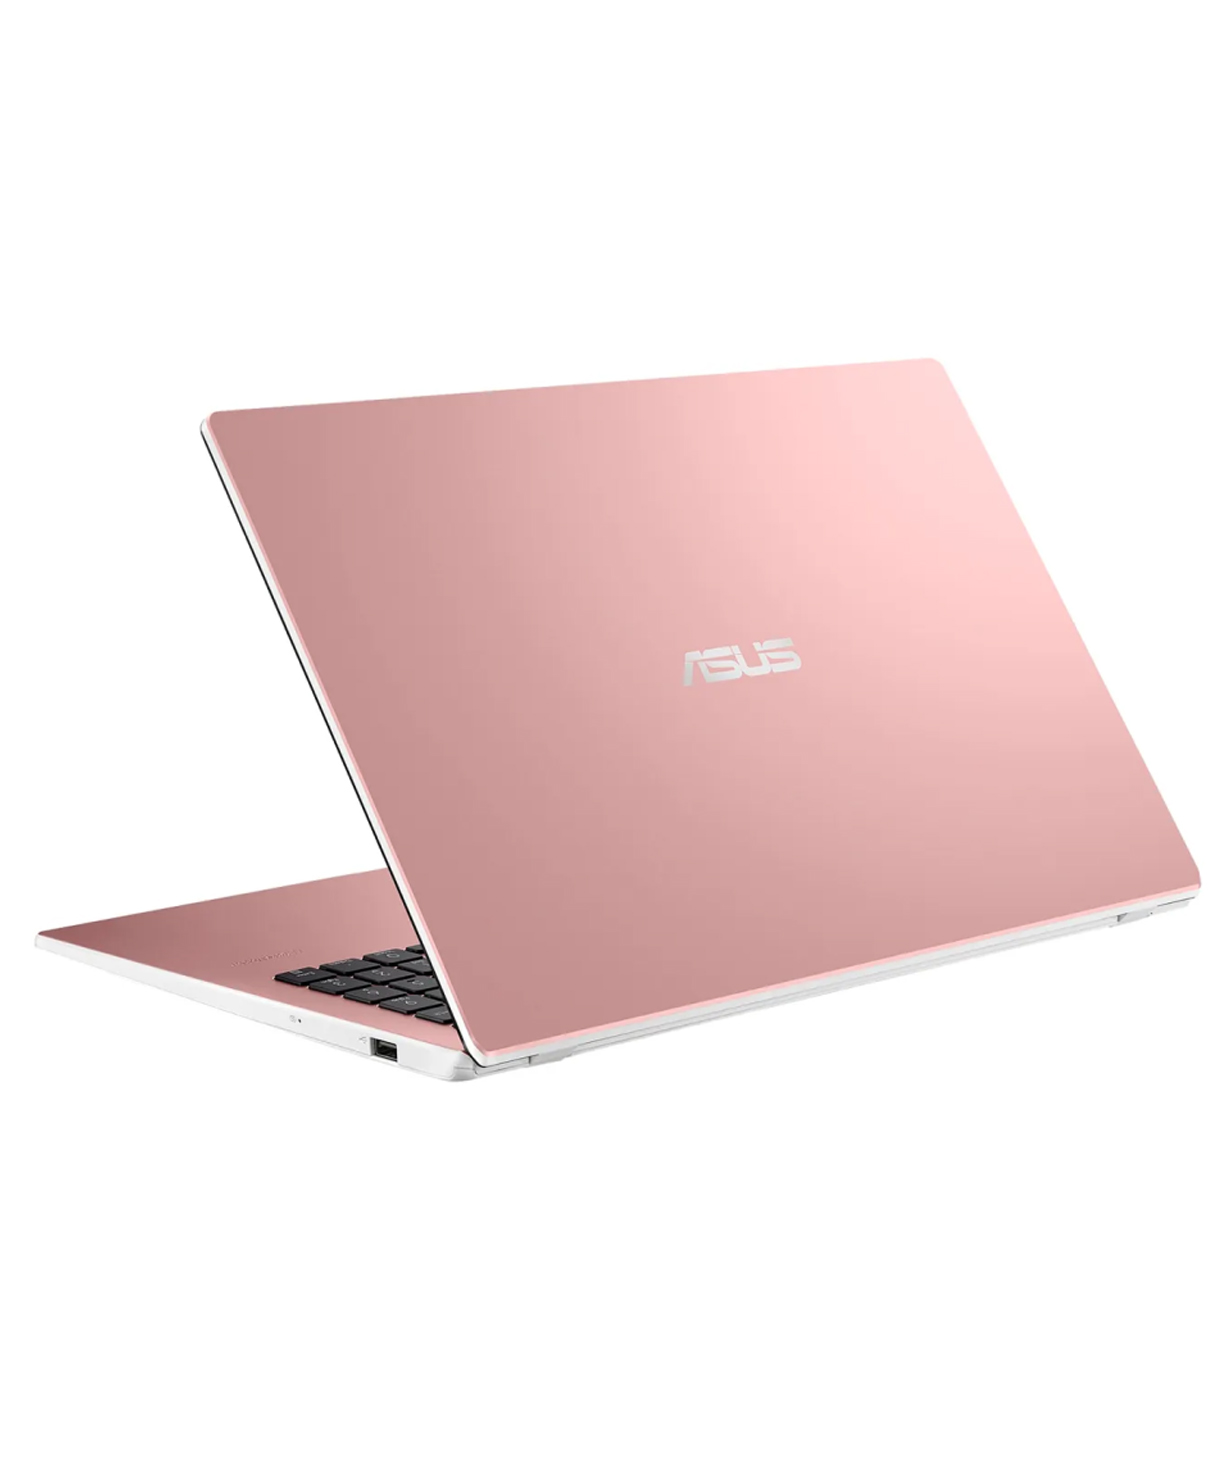 Նոութբուք Asus VivoBook L510KA (4GB, 128GB SSD, Intel N6000, 15.6` 1920x1080, pink)